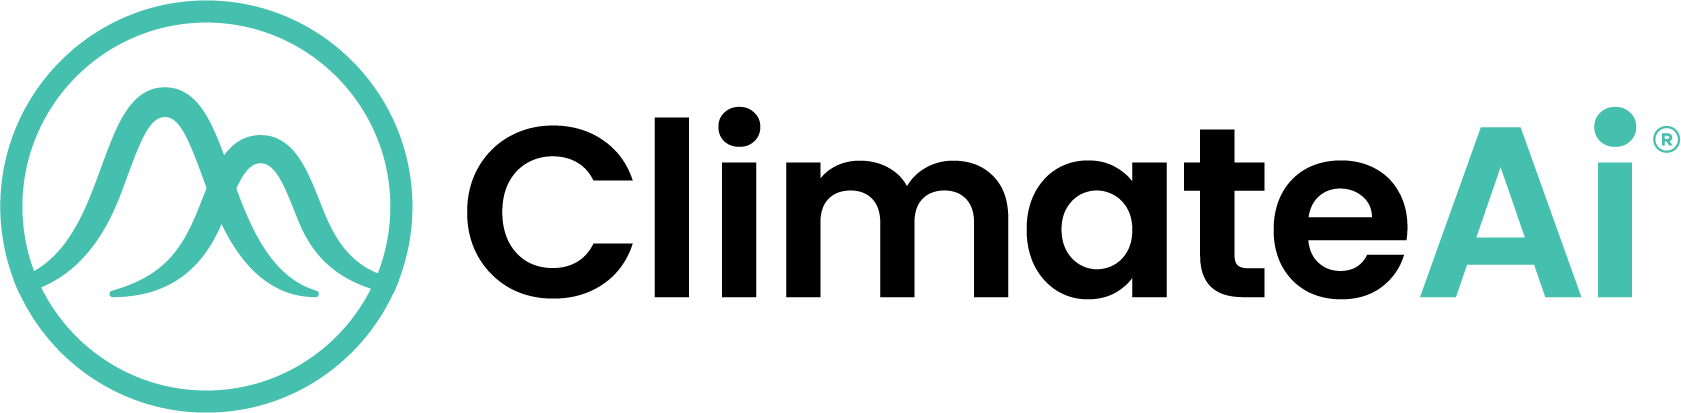 climateai logo